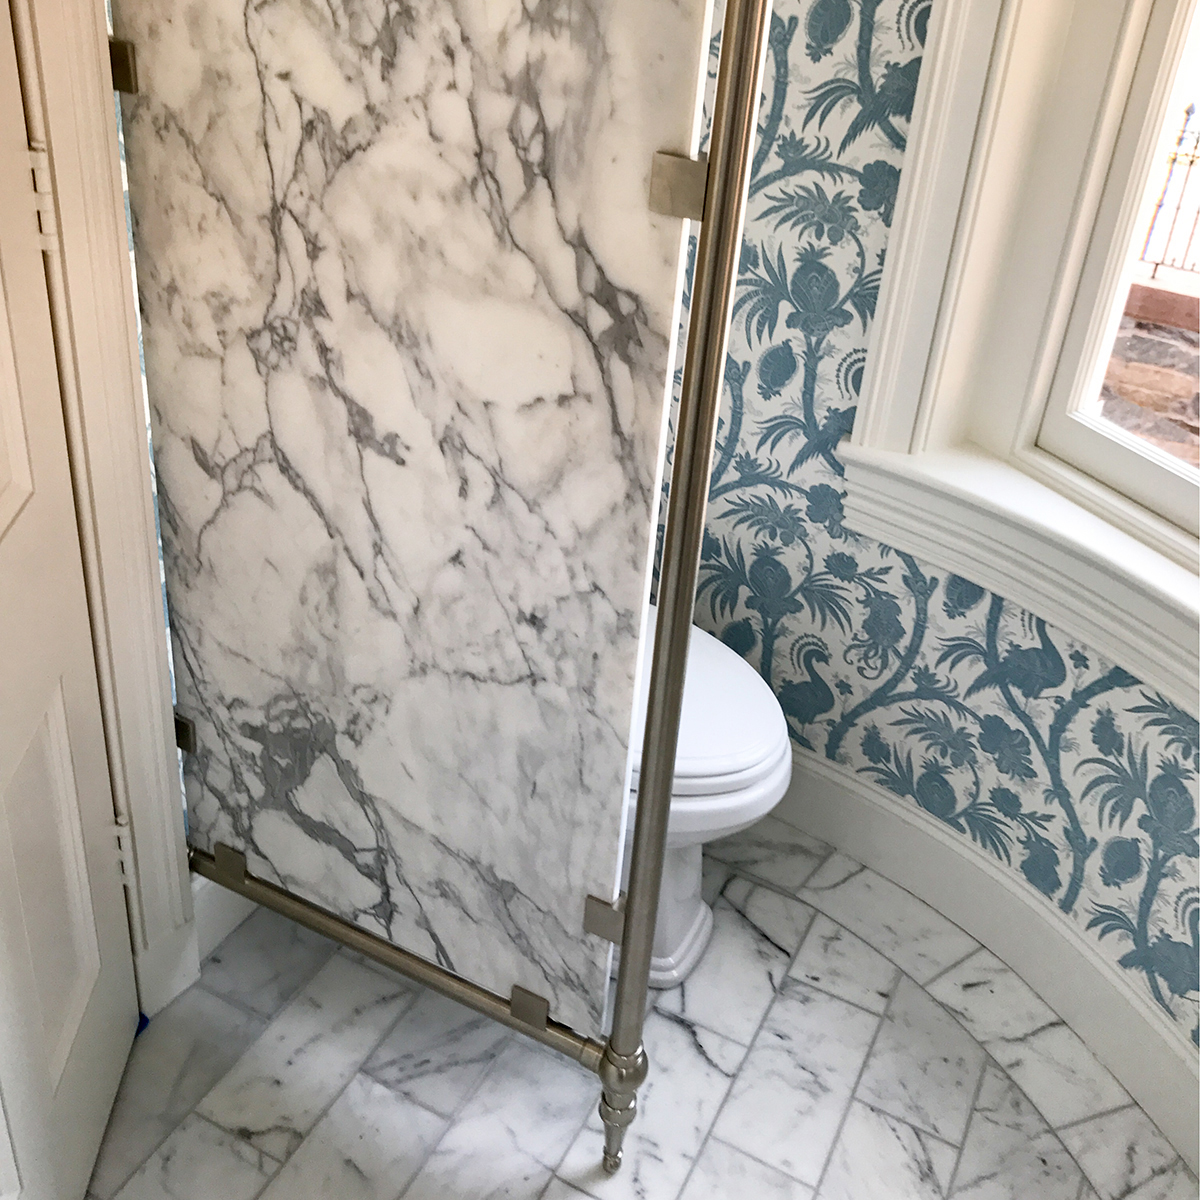 https://sinklegs.com/wp-content/uploads/2018/04/1105-Custom-Bathroom-Divider-Panel.jpg